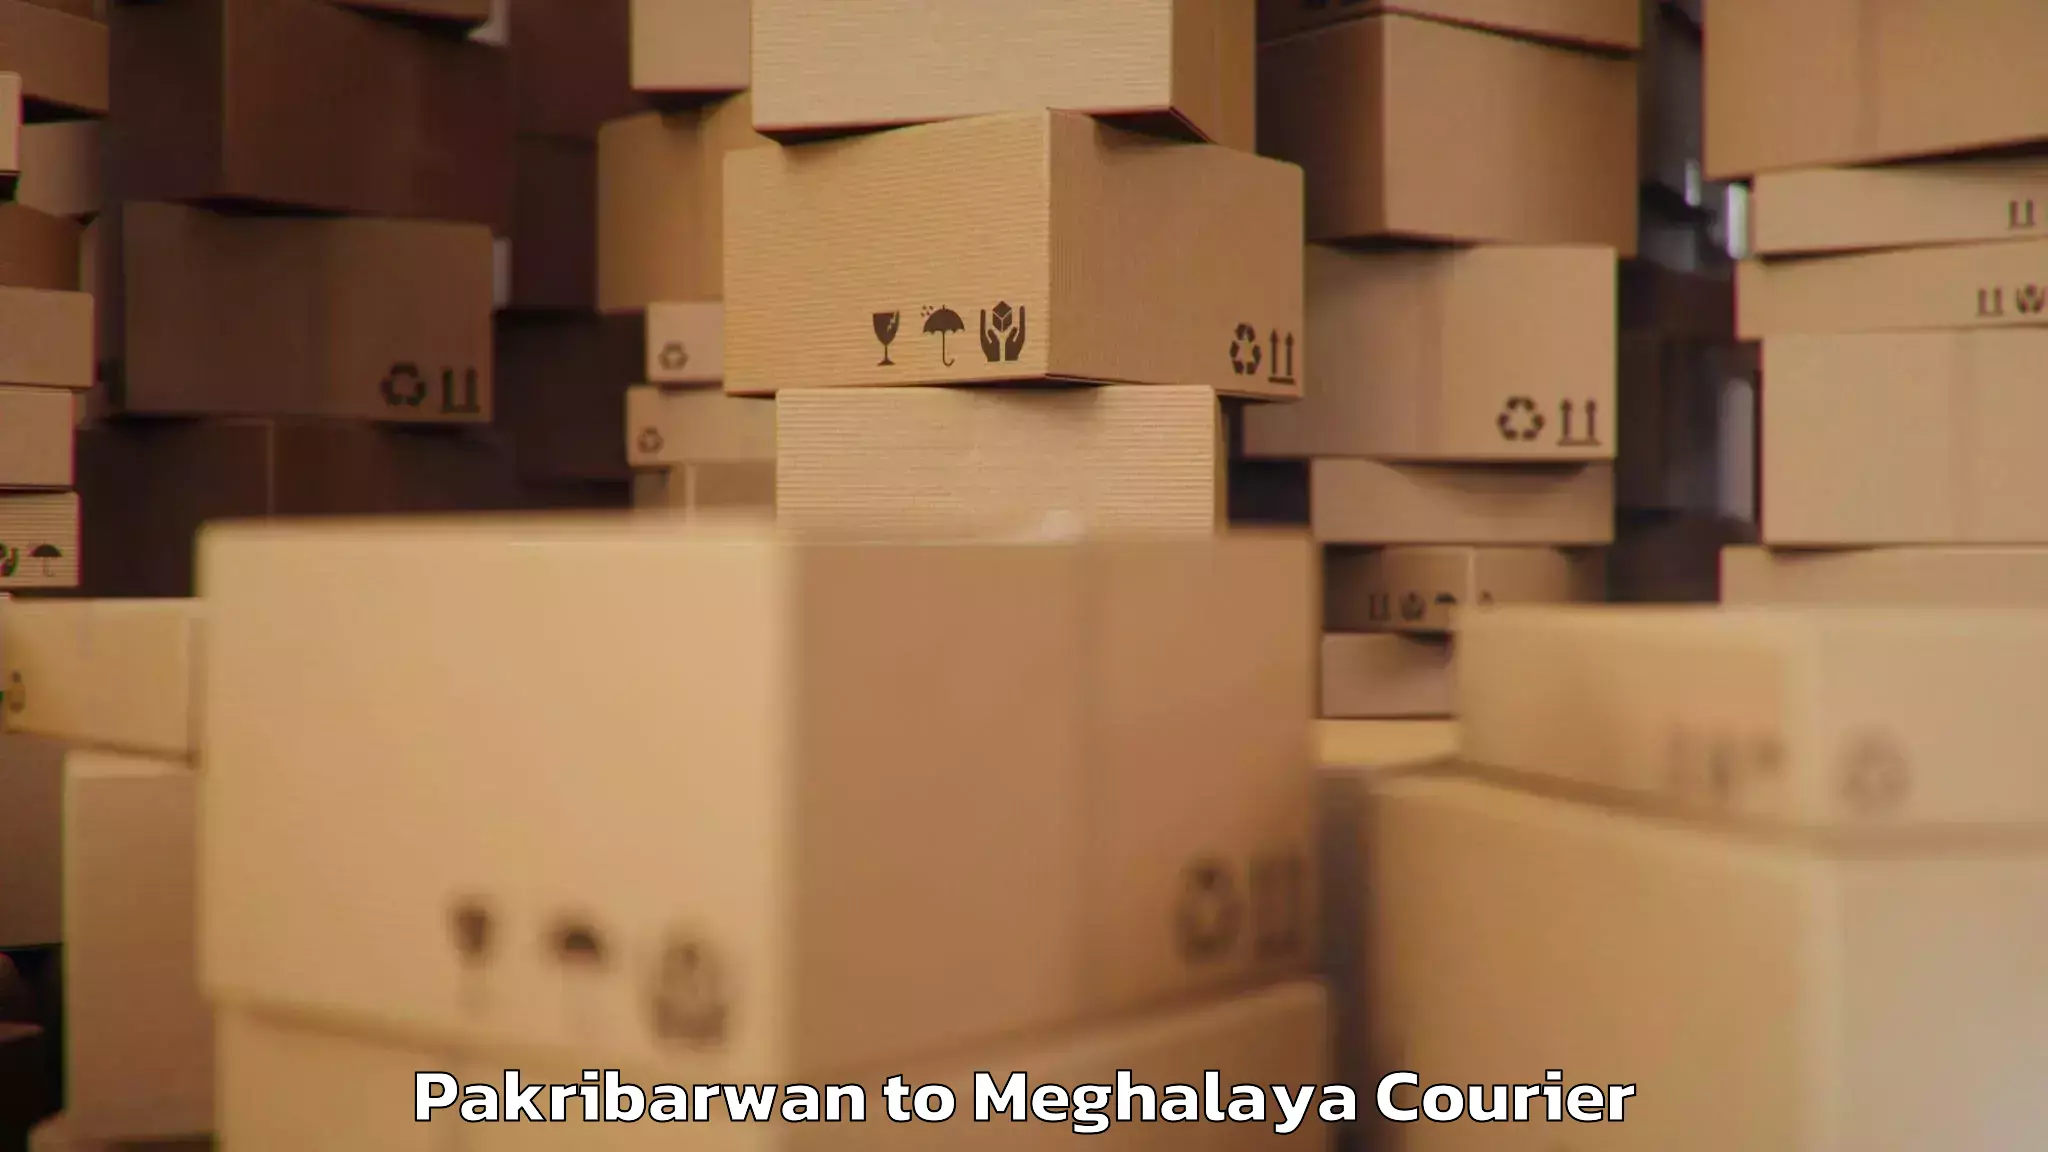 Baggage transport cost Pakribarwan to NIT Meghalaya